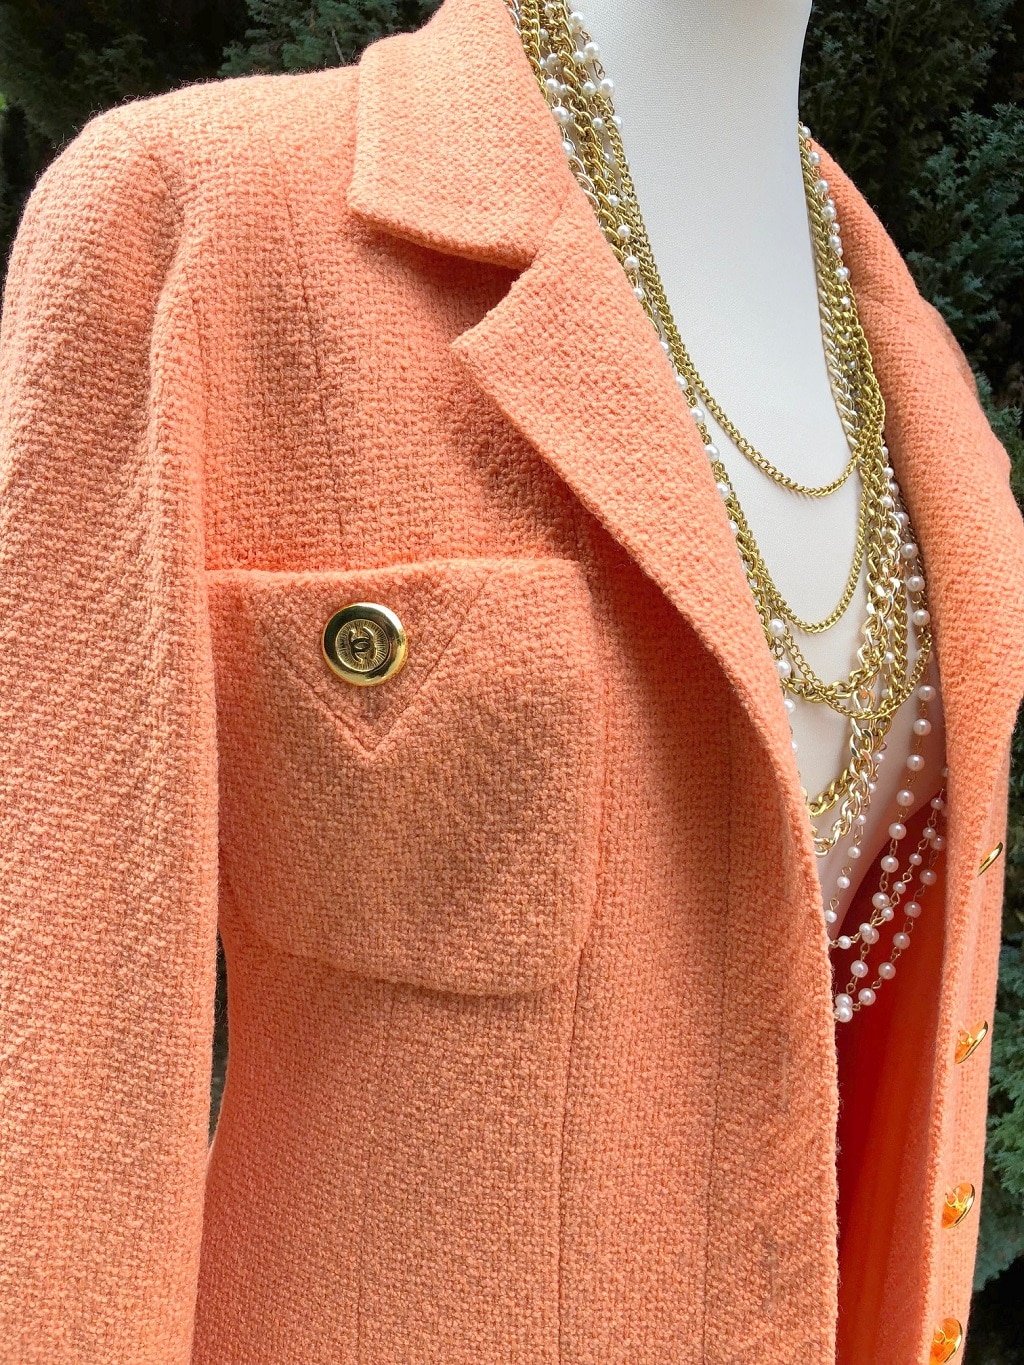 CHANEL Suit Tweed Bouclé Vintage Circa 1981 - Chelsea Vintage Couture